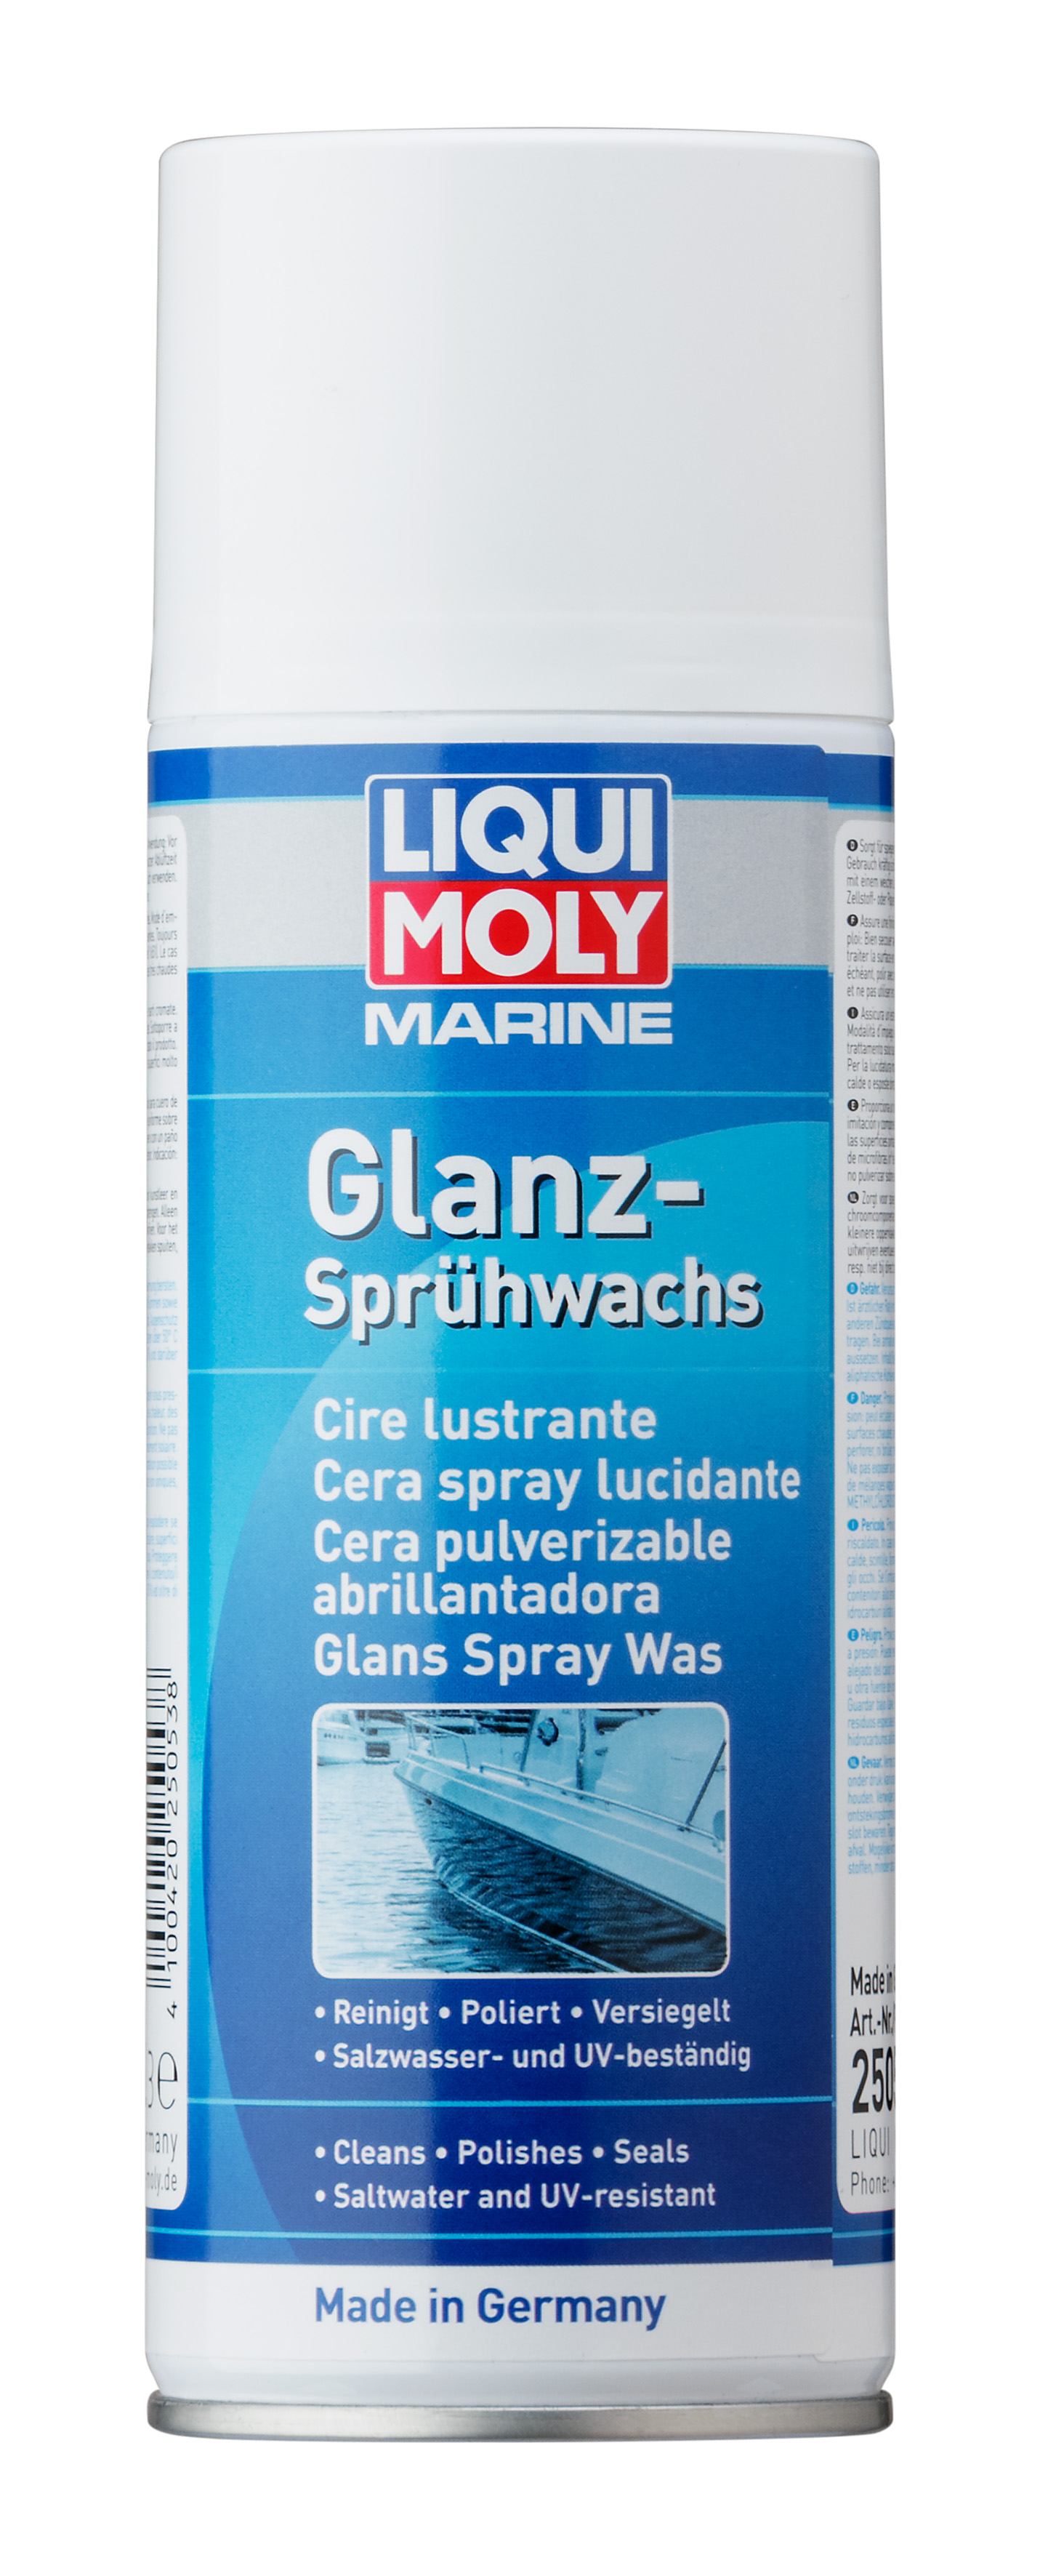 Liqui Moly Marine-Glanz-Sprühwachs